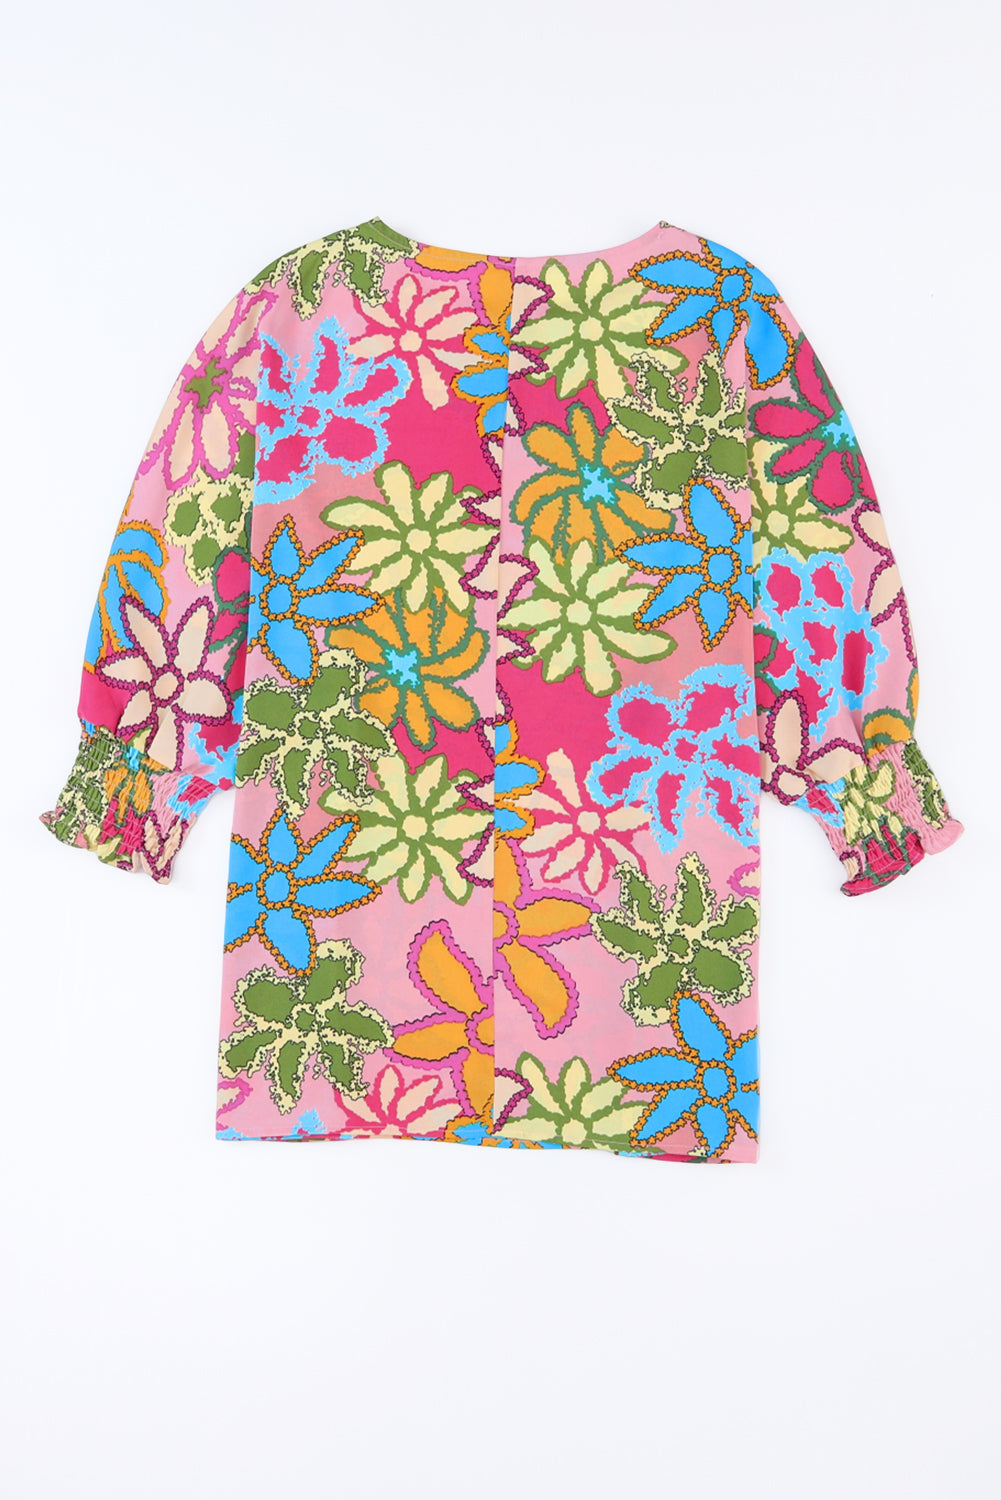 Rožnata bluza z zapestnicami in cvetličnim potiskom